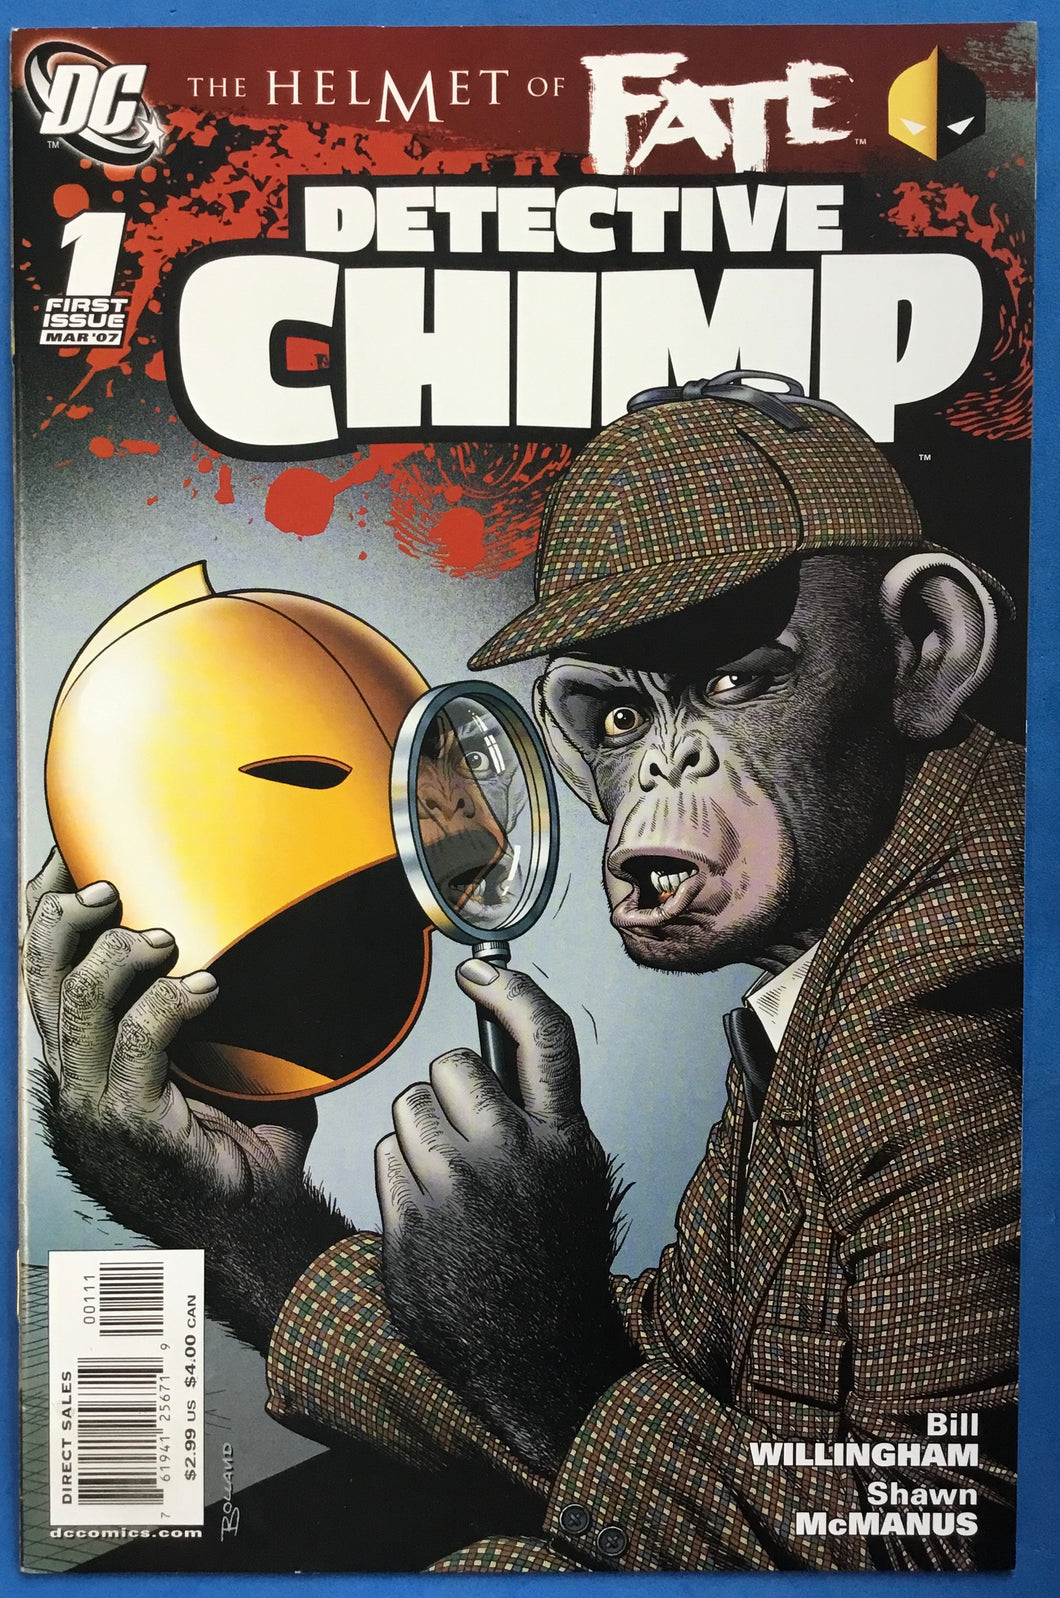 The Helmet of Fate: Detective Chimp No. #1 2007 DC Comics